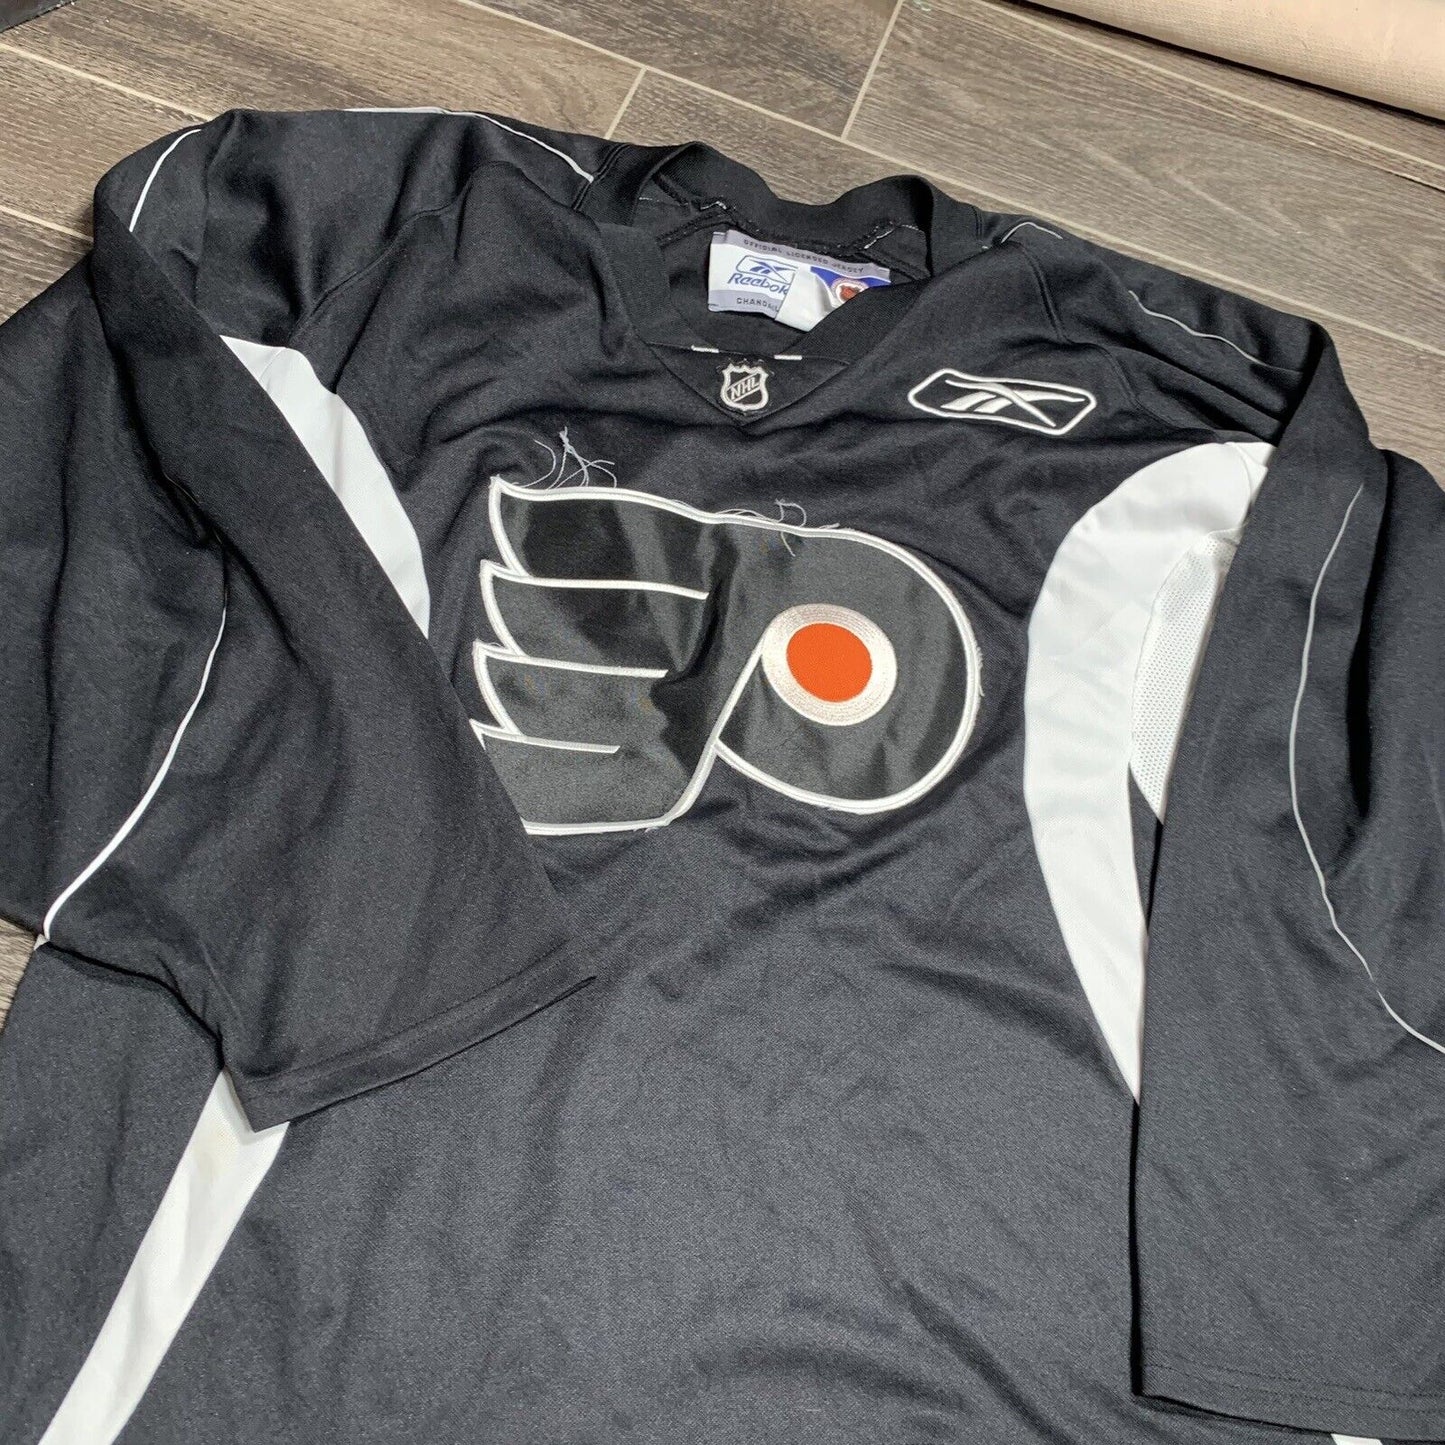 Philadelphia Flyers NHL Reebok Black Jersey Adult Size Xl